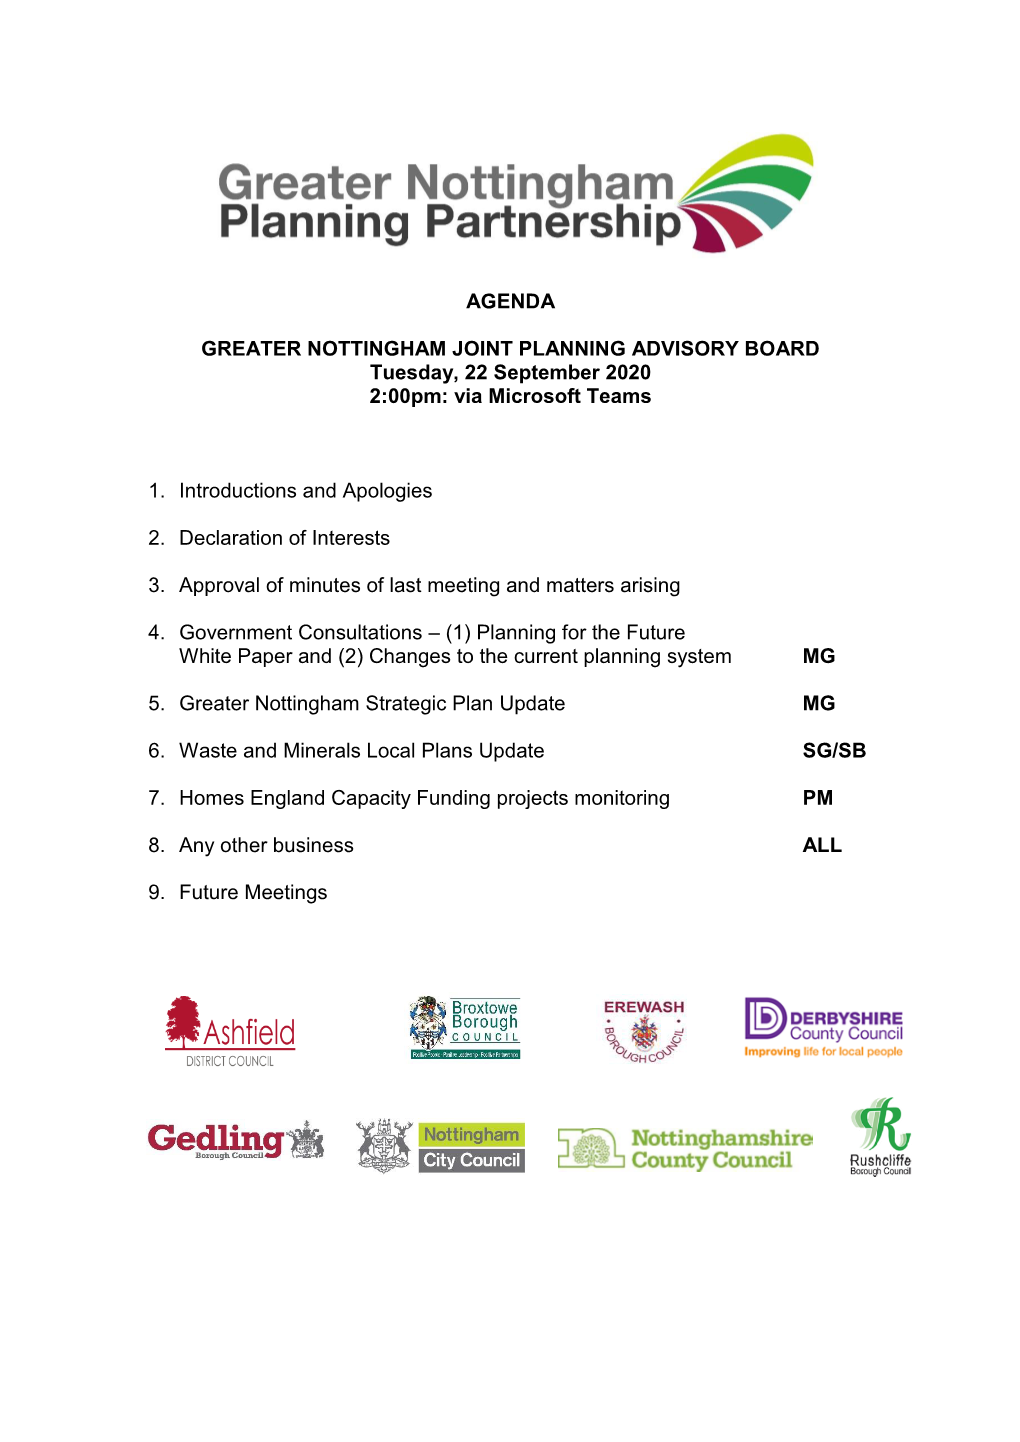 Agenda Greater Nottingham Joint Planning Advisory